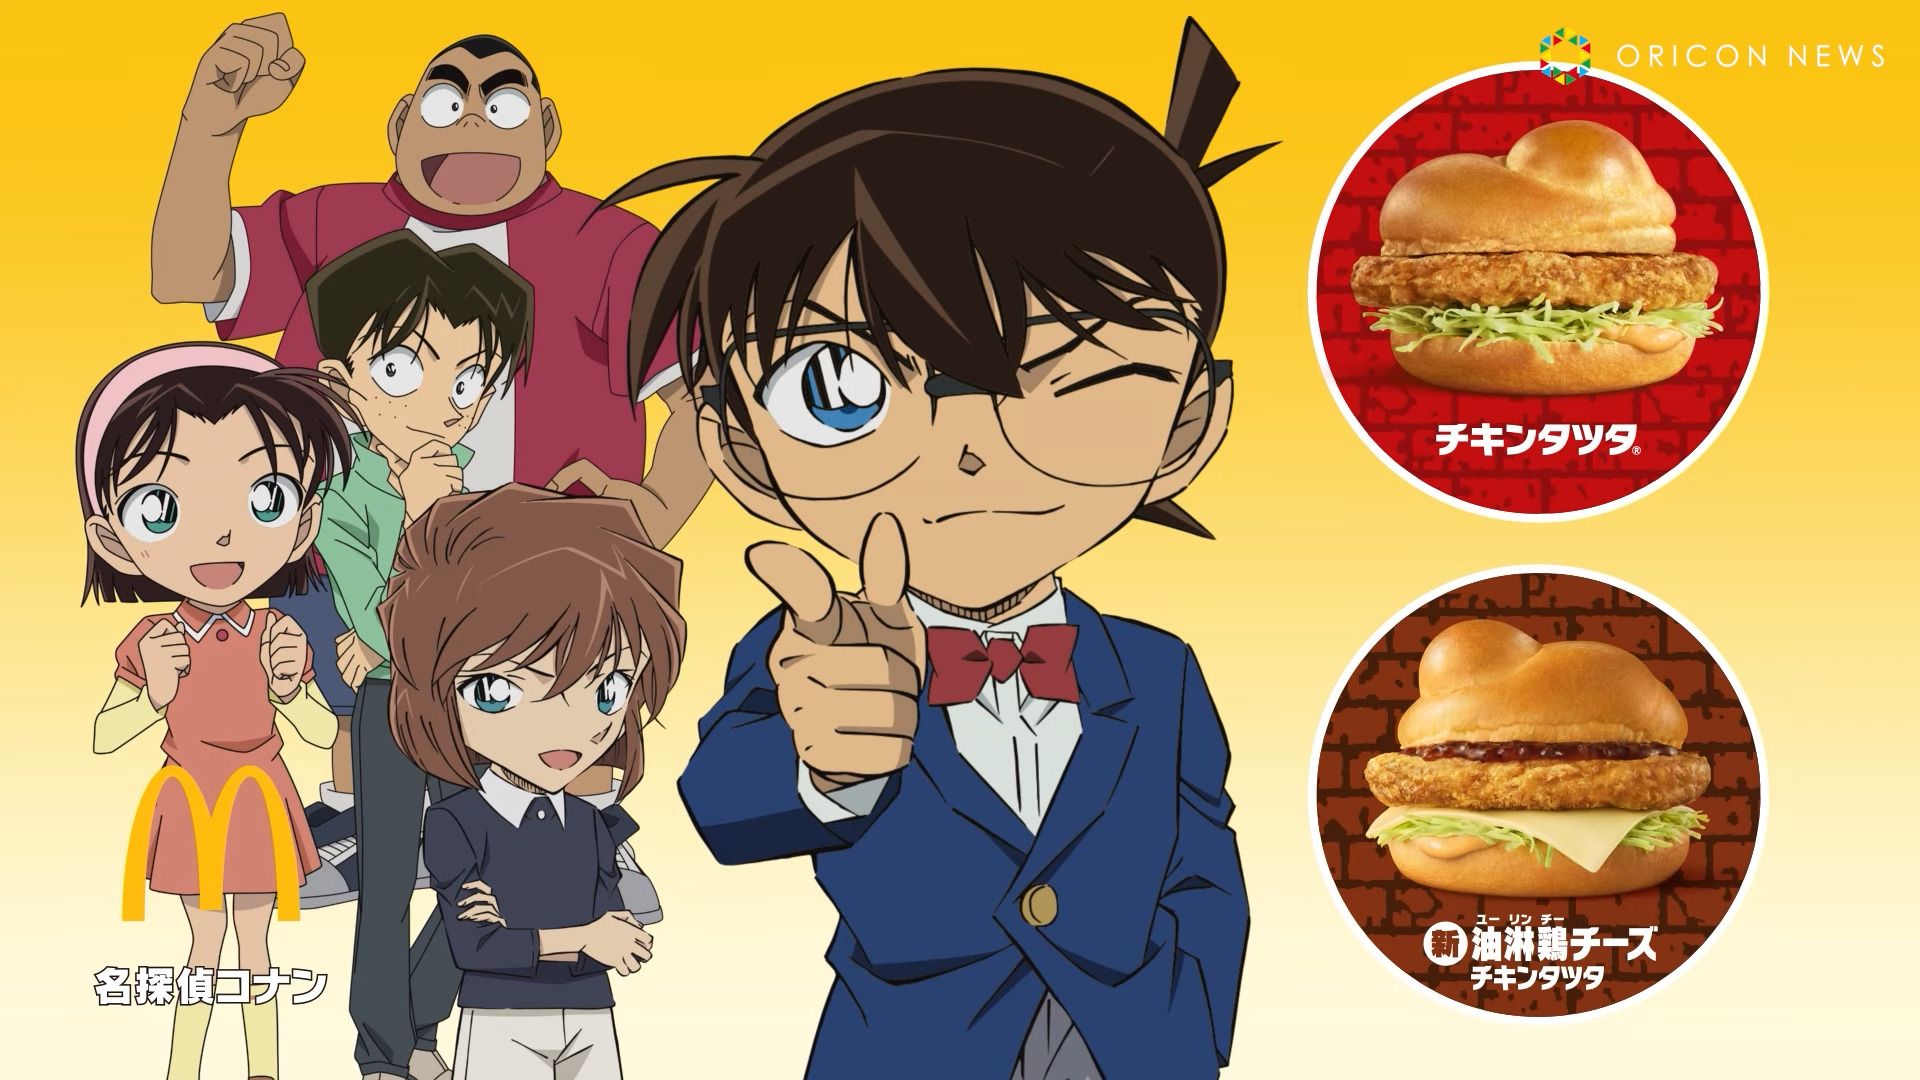 #Detektiv Conan und das Geheimnis der neuen McDonald’s Burger in Japan